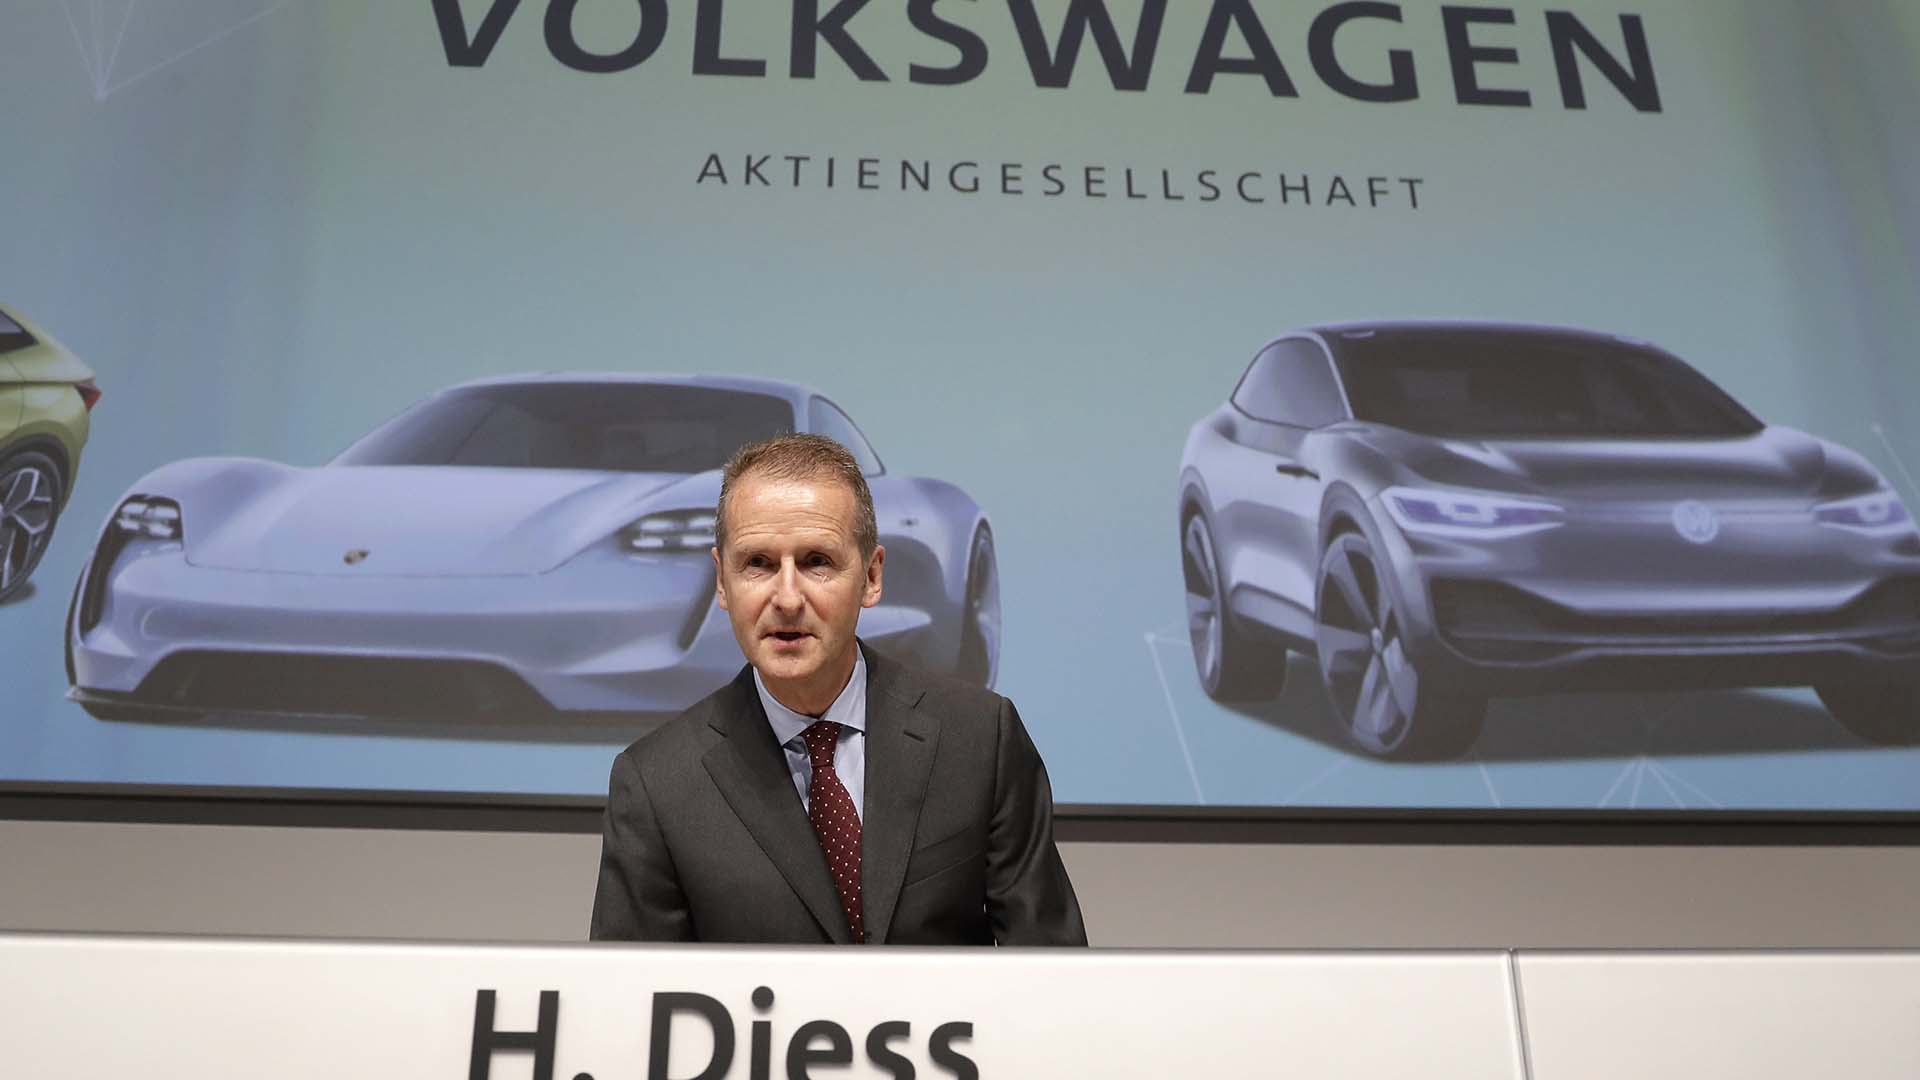 Volkswagen reembolsa el precio de su vehículo a una clienta por el Dieselgate